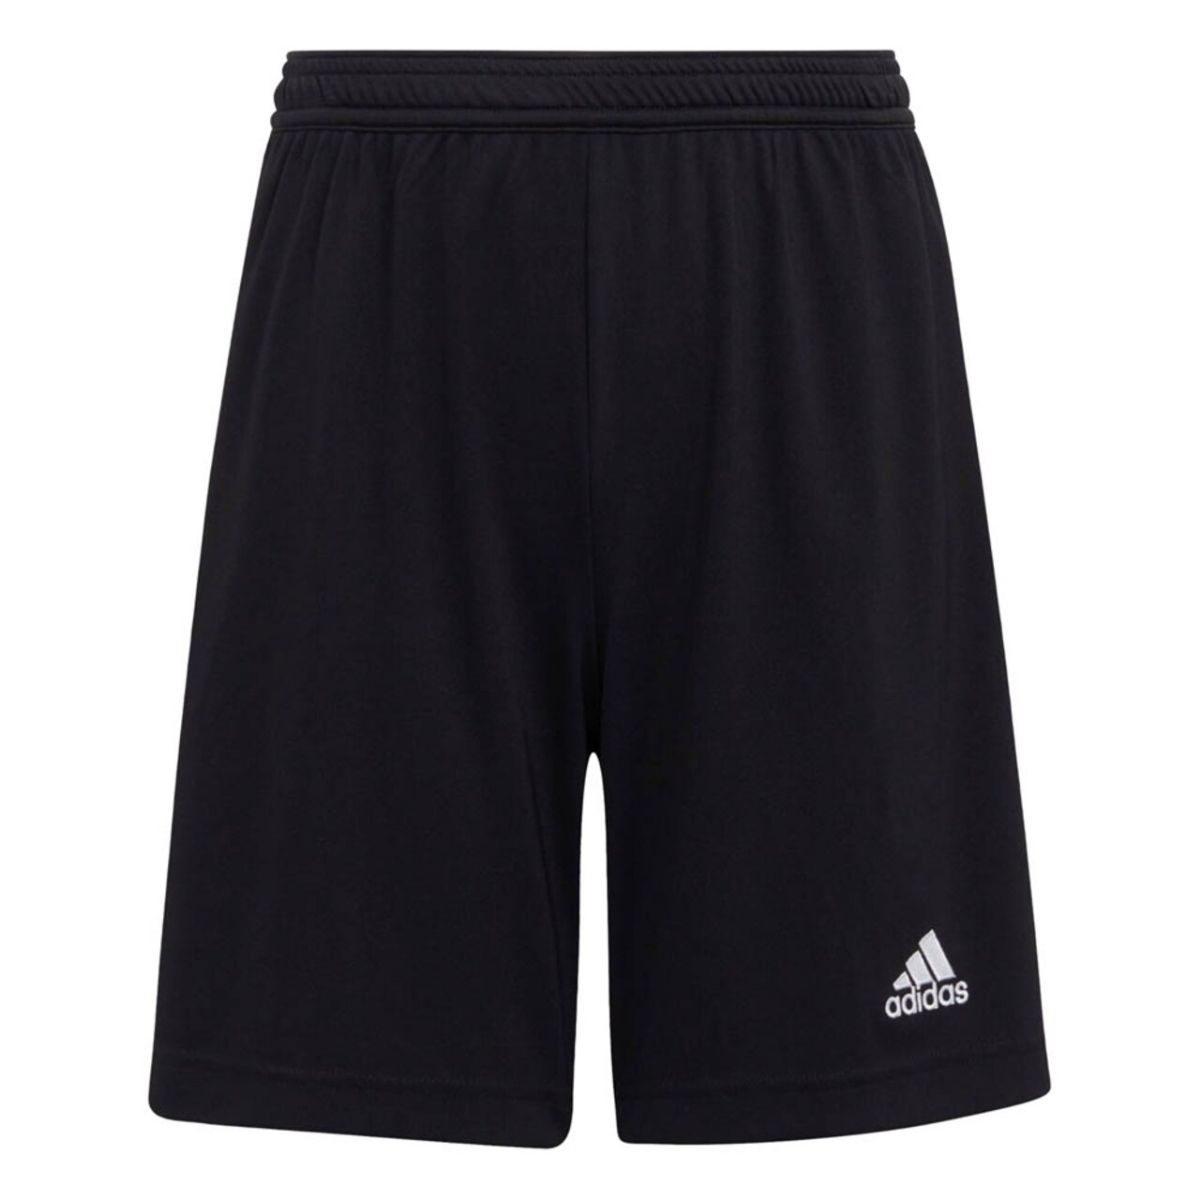 adidas fotballshorts trening shorts svart